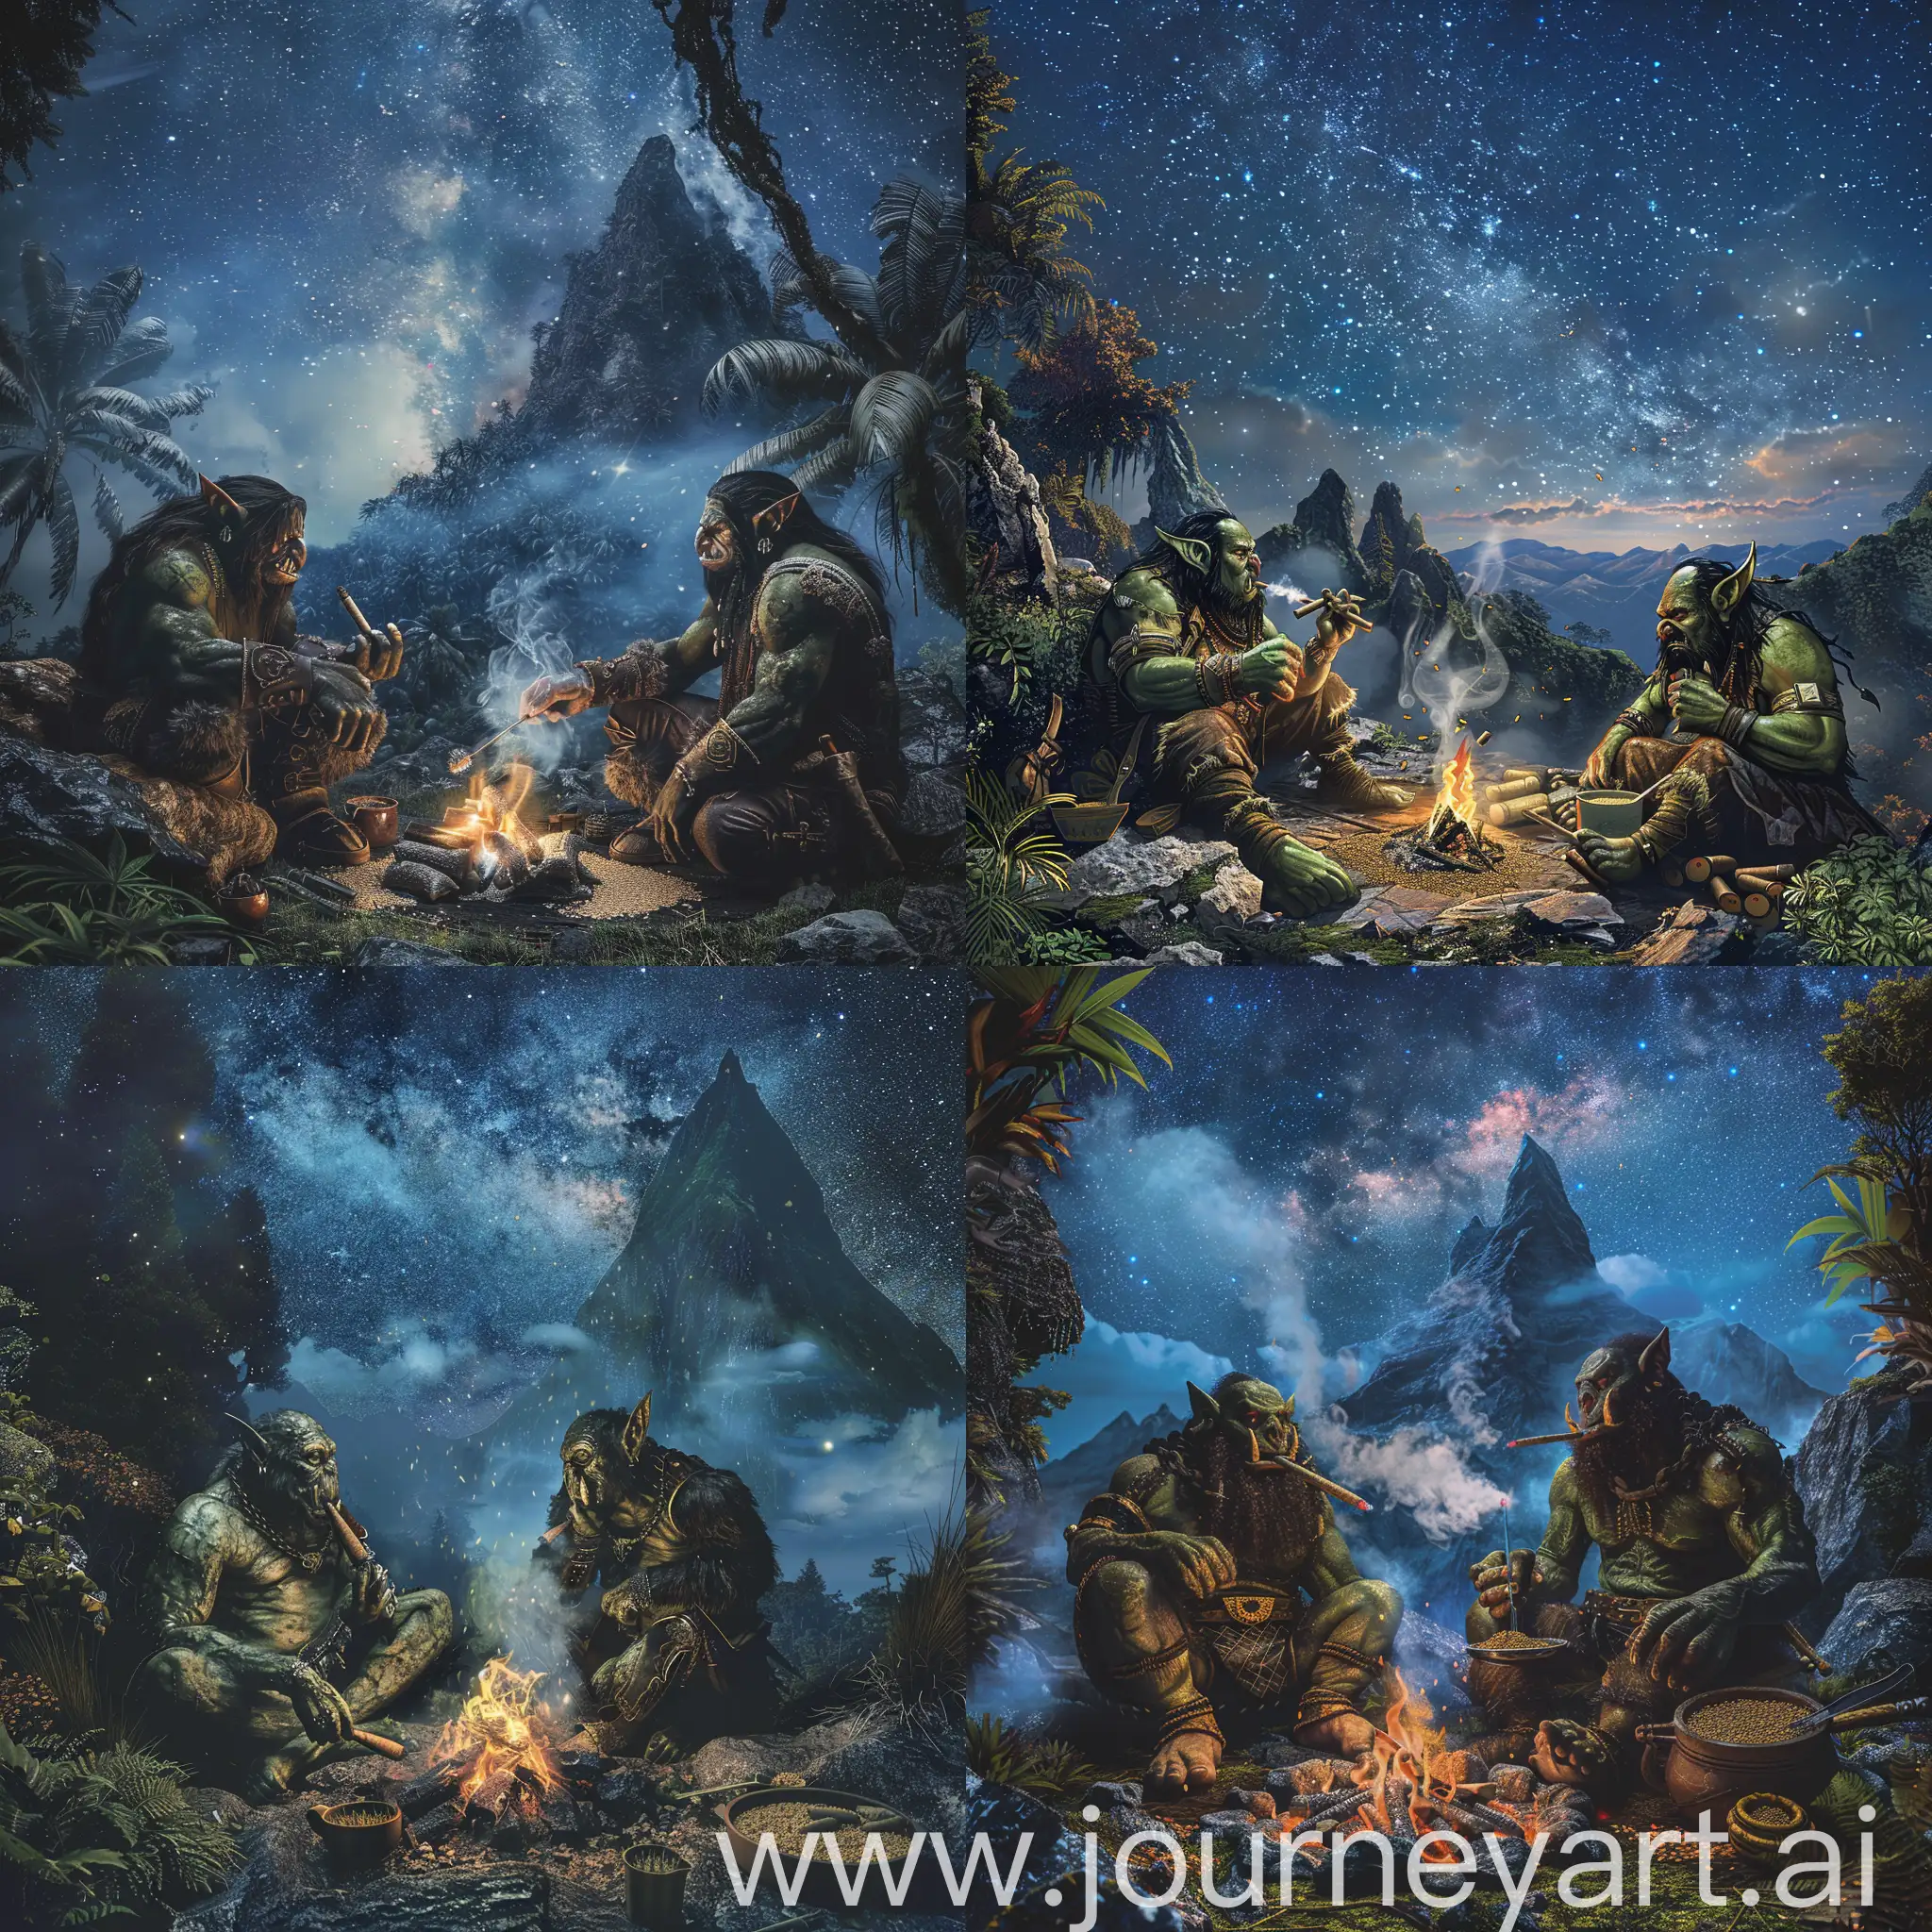 Горный лагерь двух орков, которые курят косяки , готовят суп и гречку, сидят рядом с костром ,  на фоне звездного неба на горной вершине в тропическом лесу